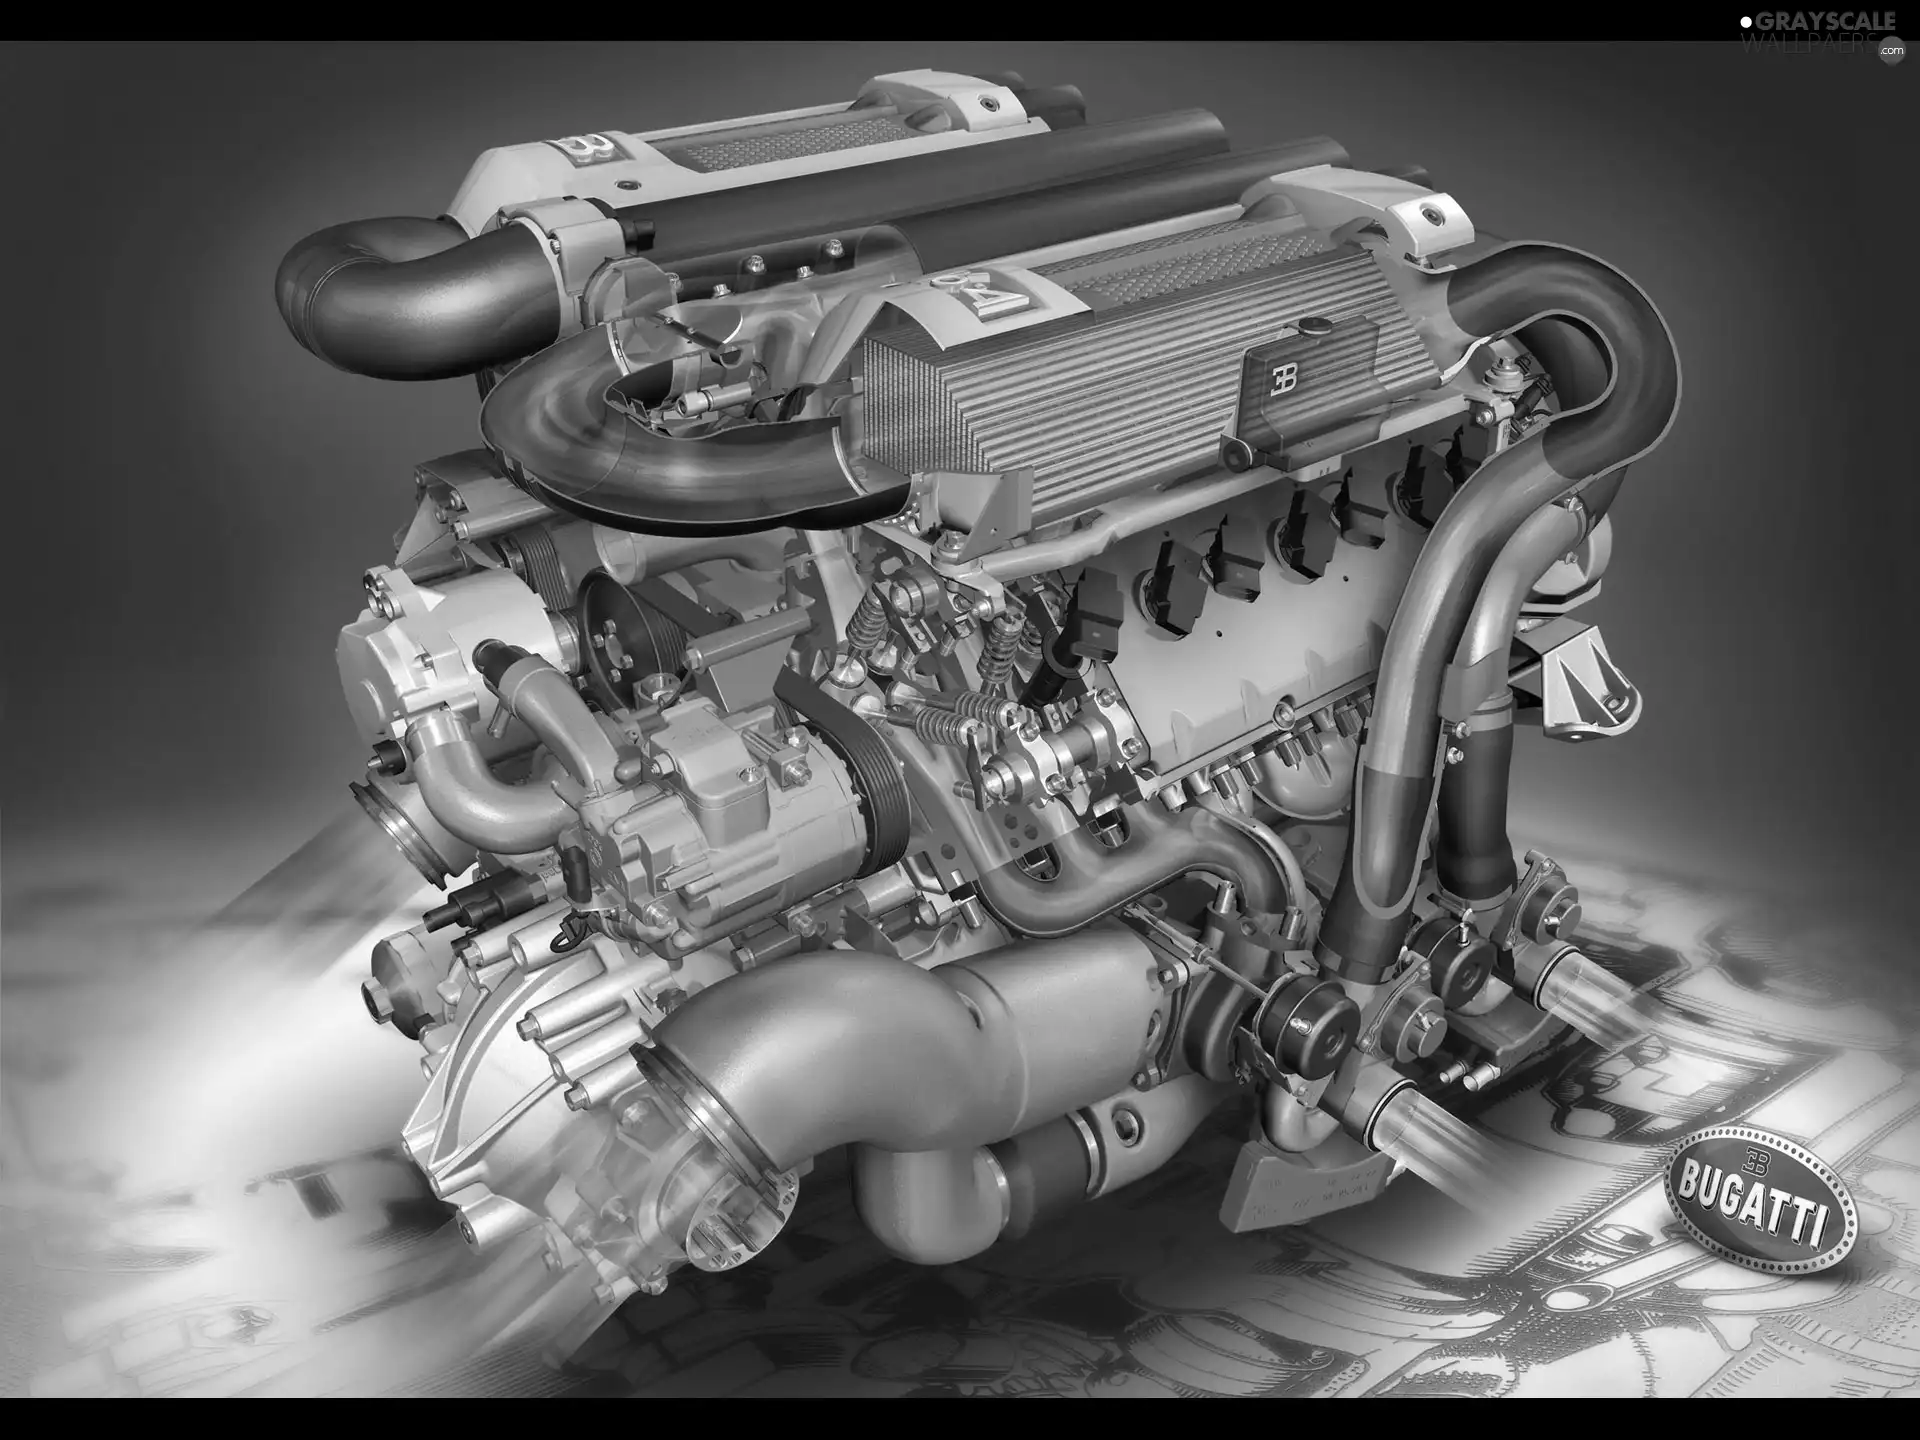 Engine, Bugatti Veyron